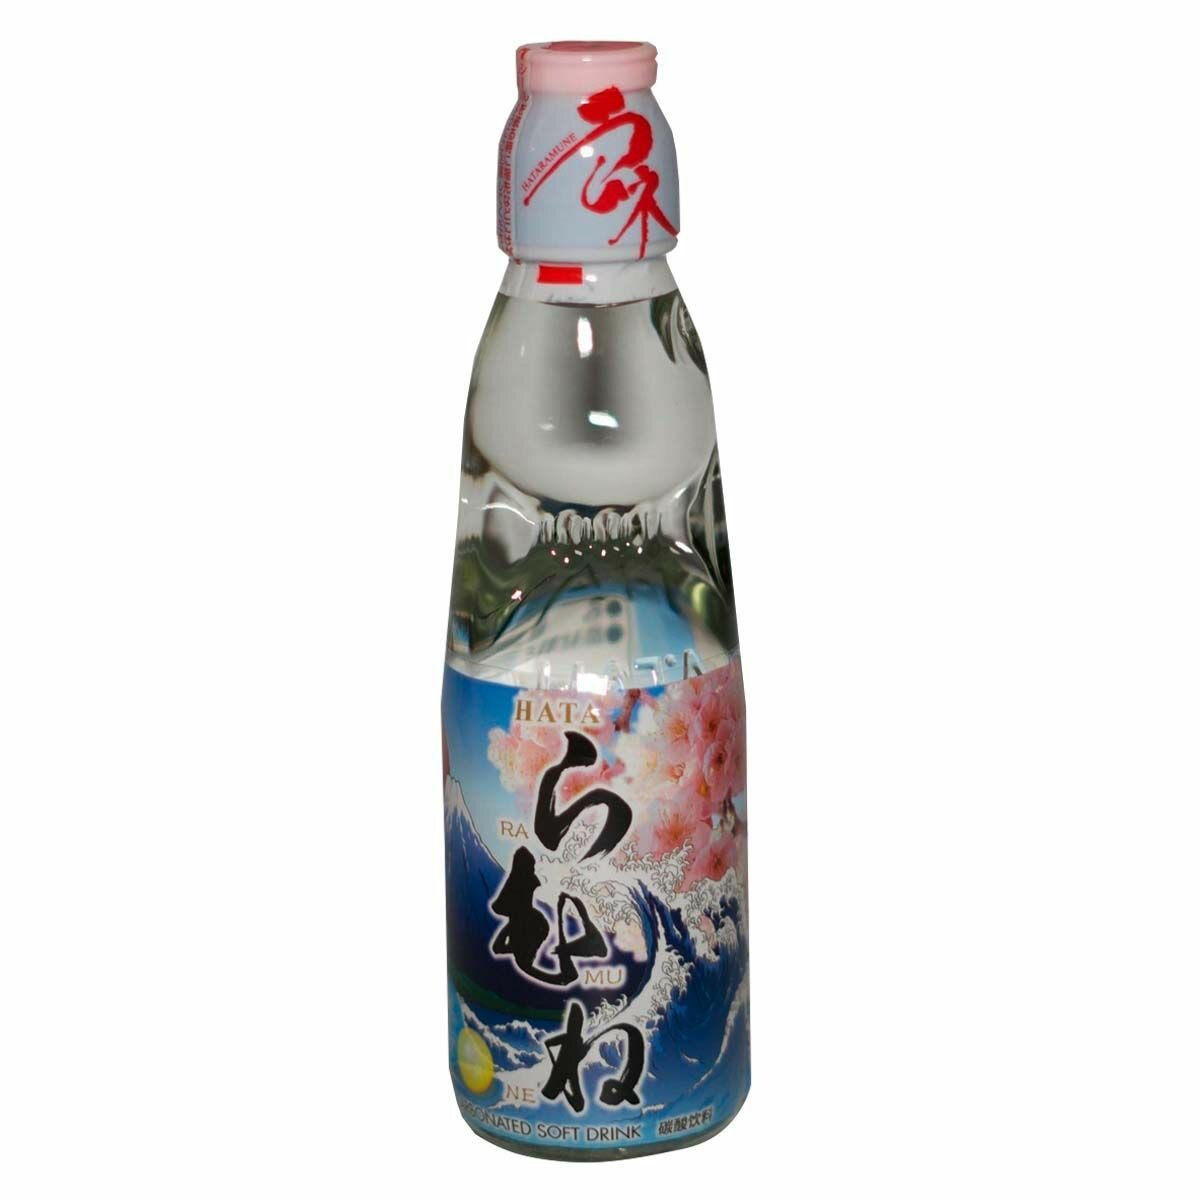 Газированный напиток Hatakosen Ramune Original (Япония), 200 мл